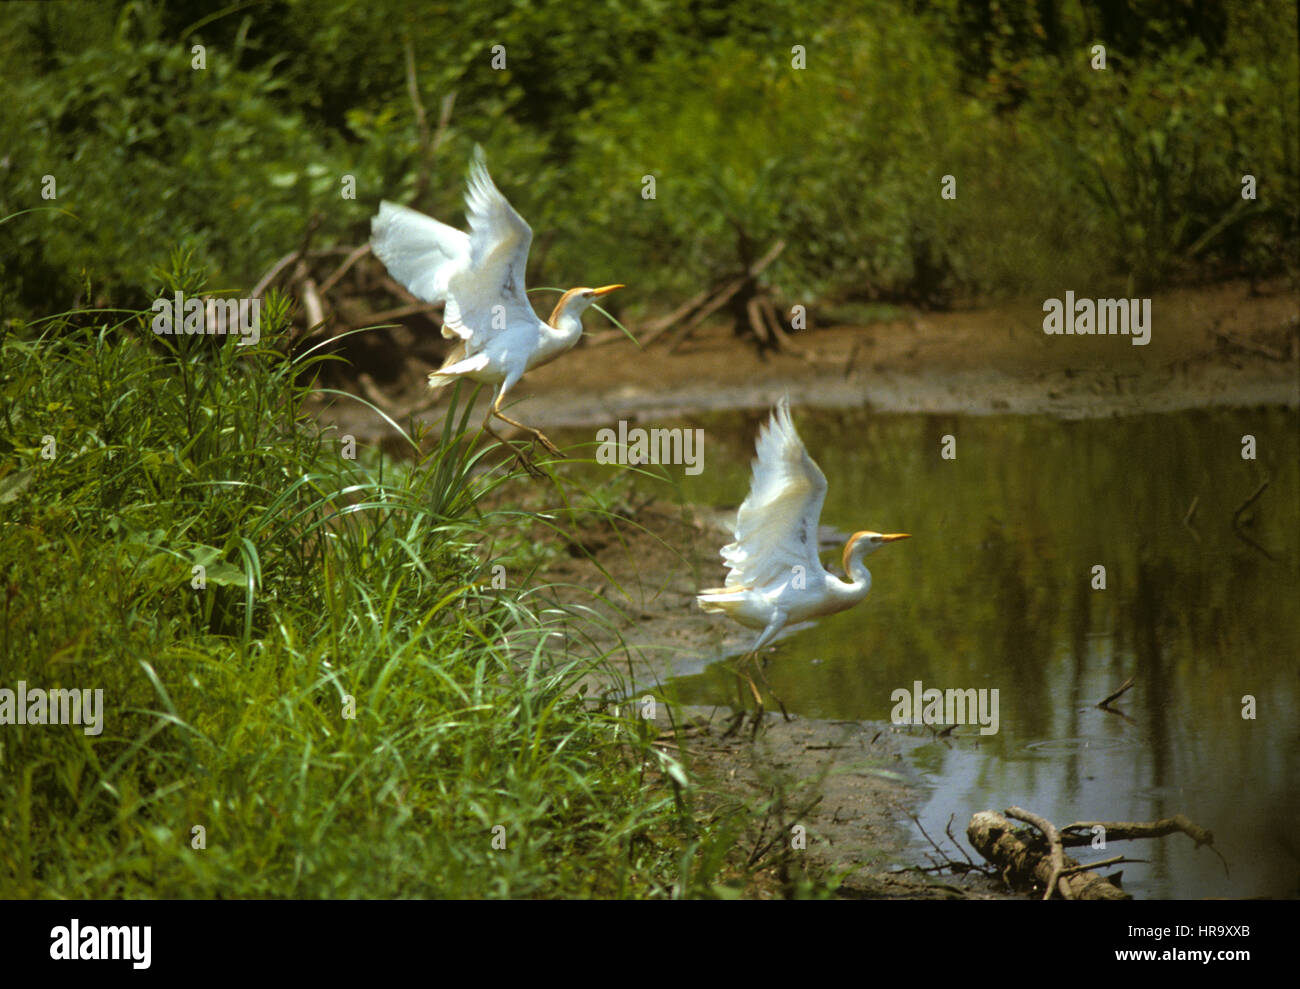 Boeufs, Bulbulcus ibis, prendre son envol d'un lac dans le sud des Etats-Unis, le Mississipi Banque D'Images